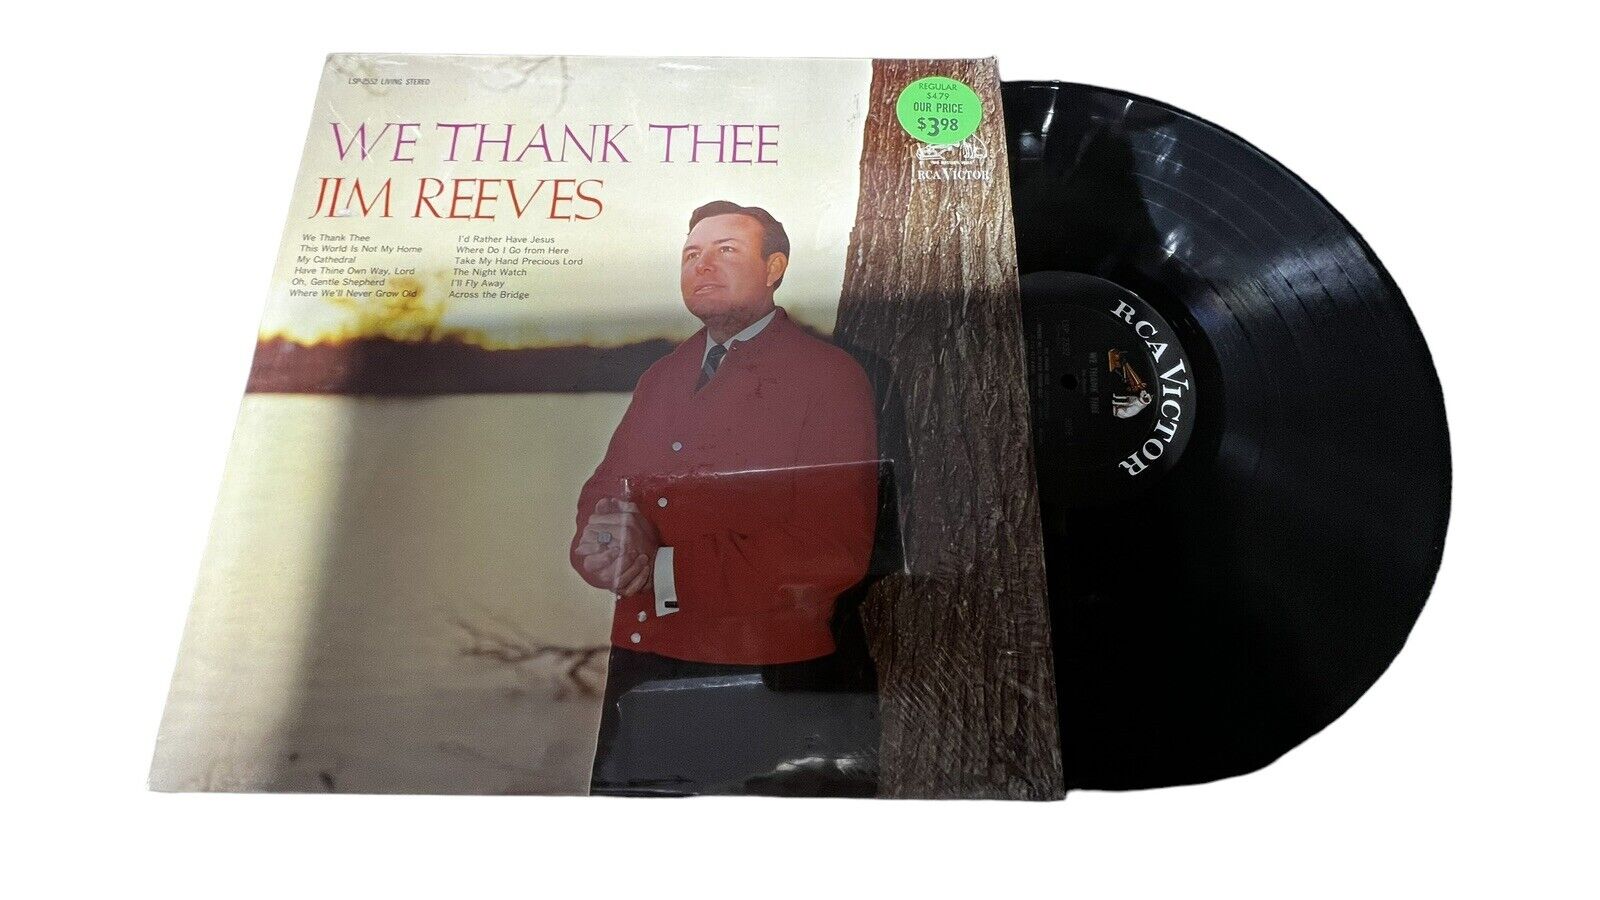 Vintage We Thank Thee Jim Reeves Album LP Vinyl Record